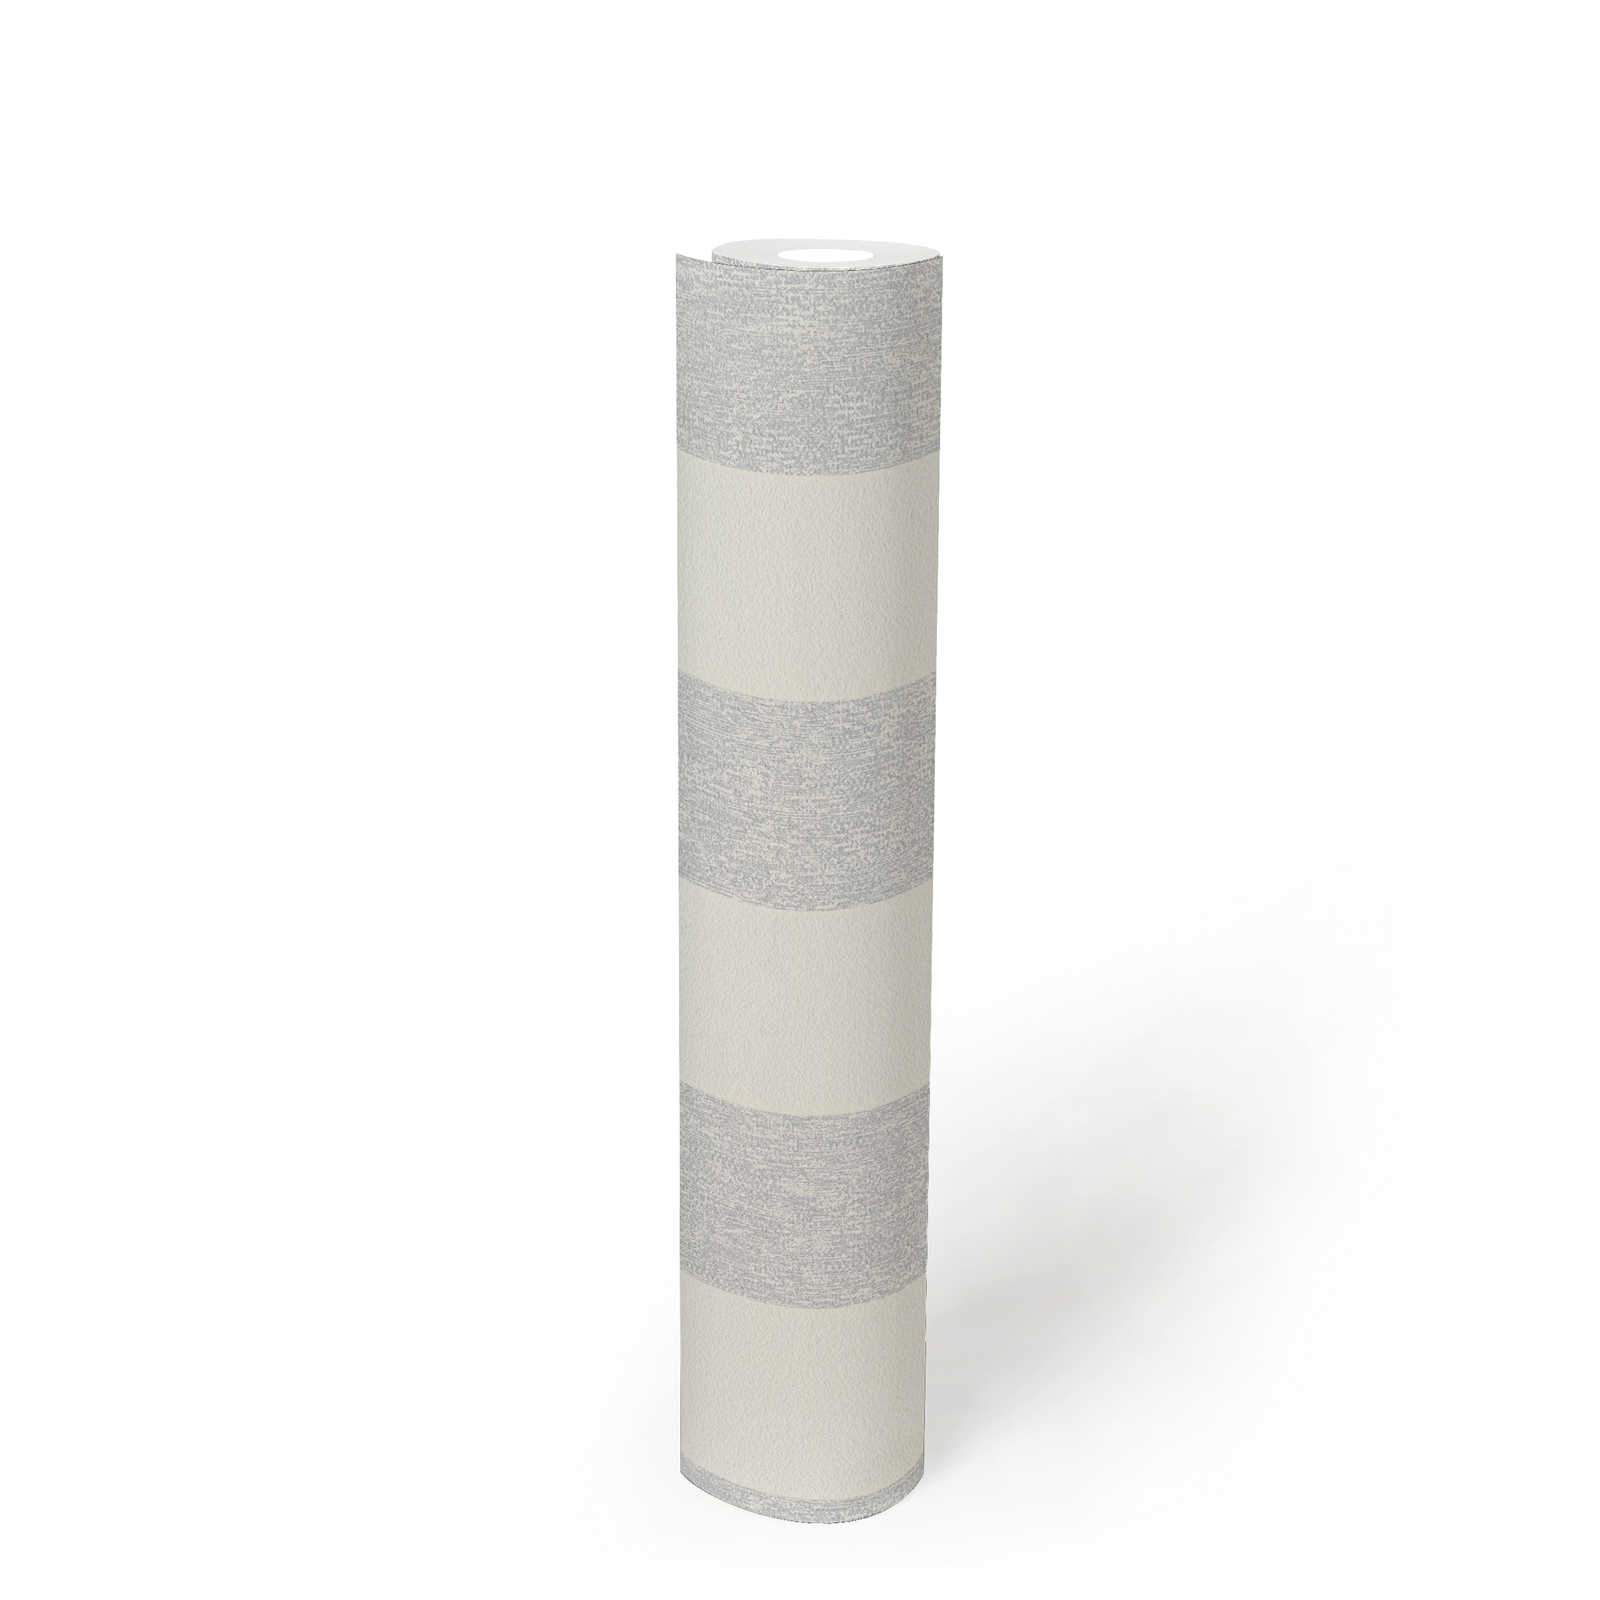             Papel pintado a rayas con estructura óptica mate - gris, blanco
        